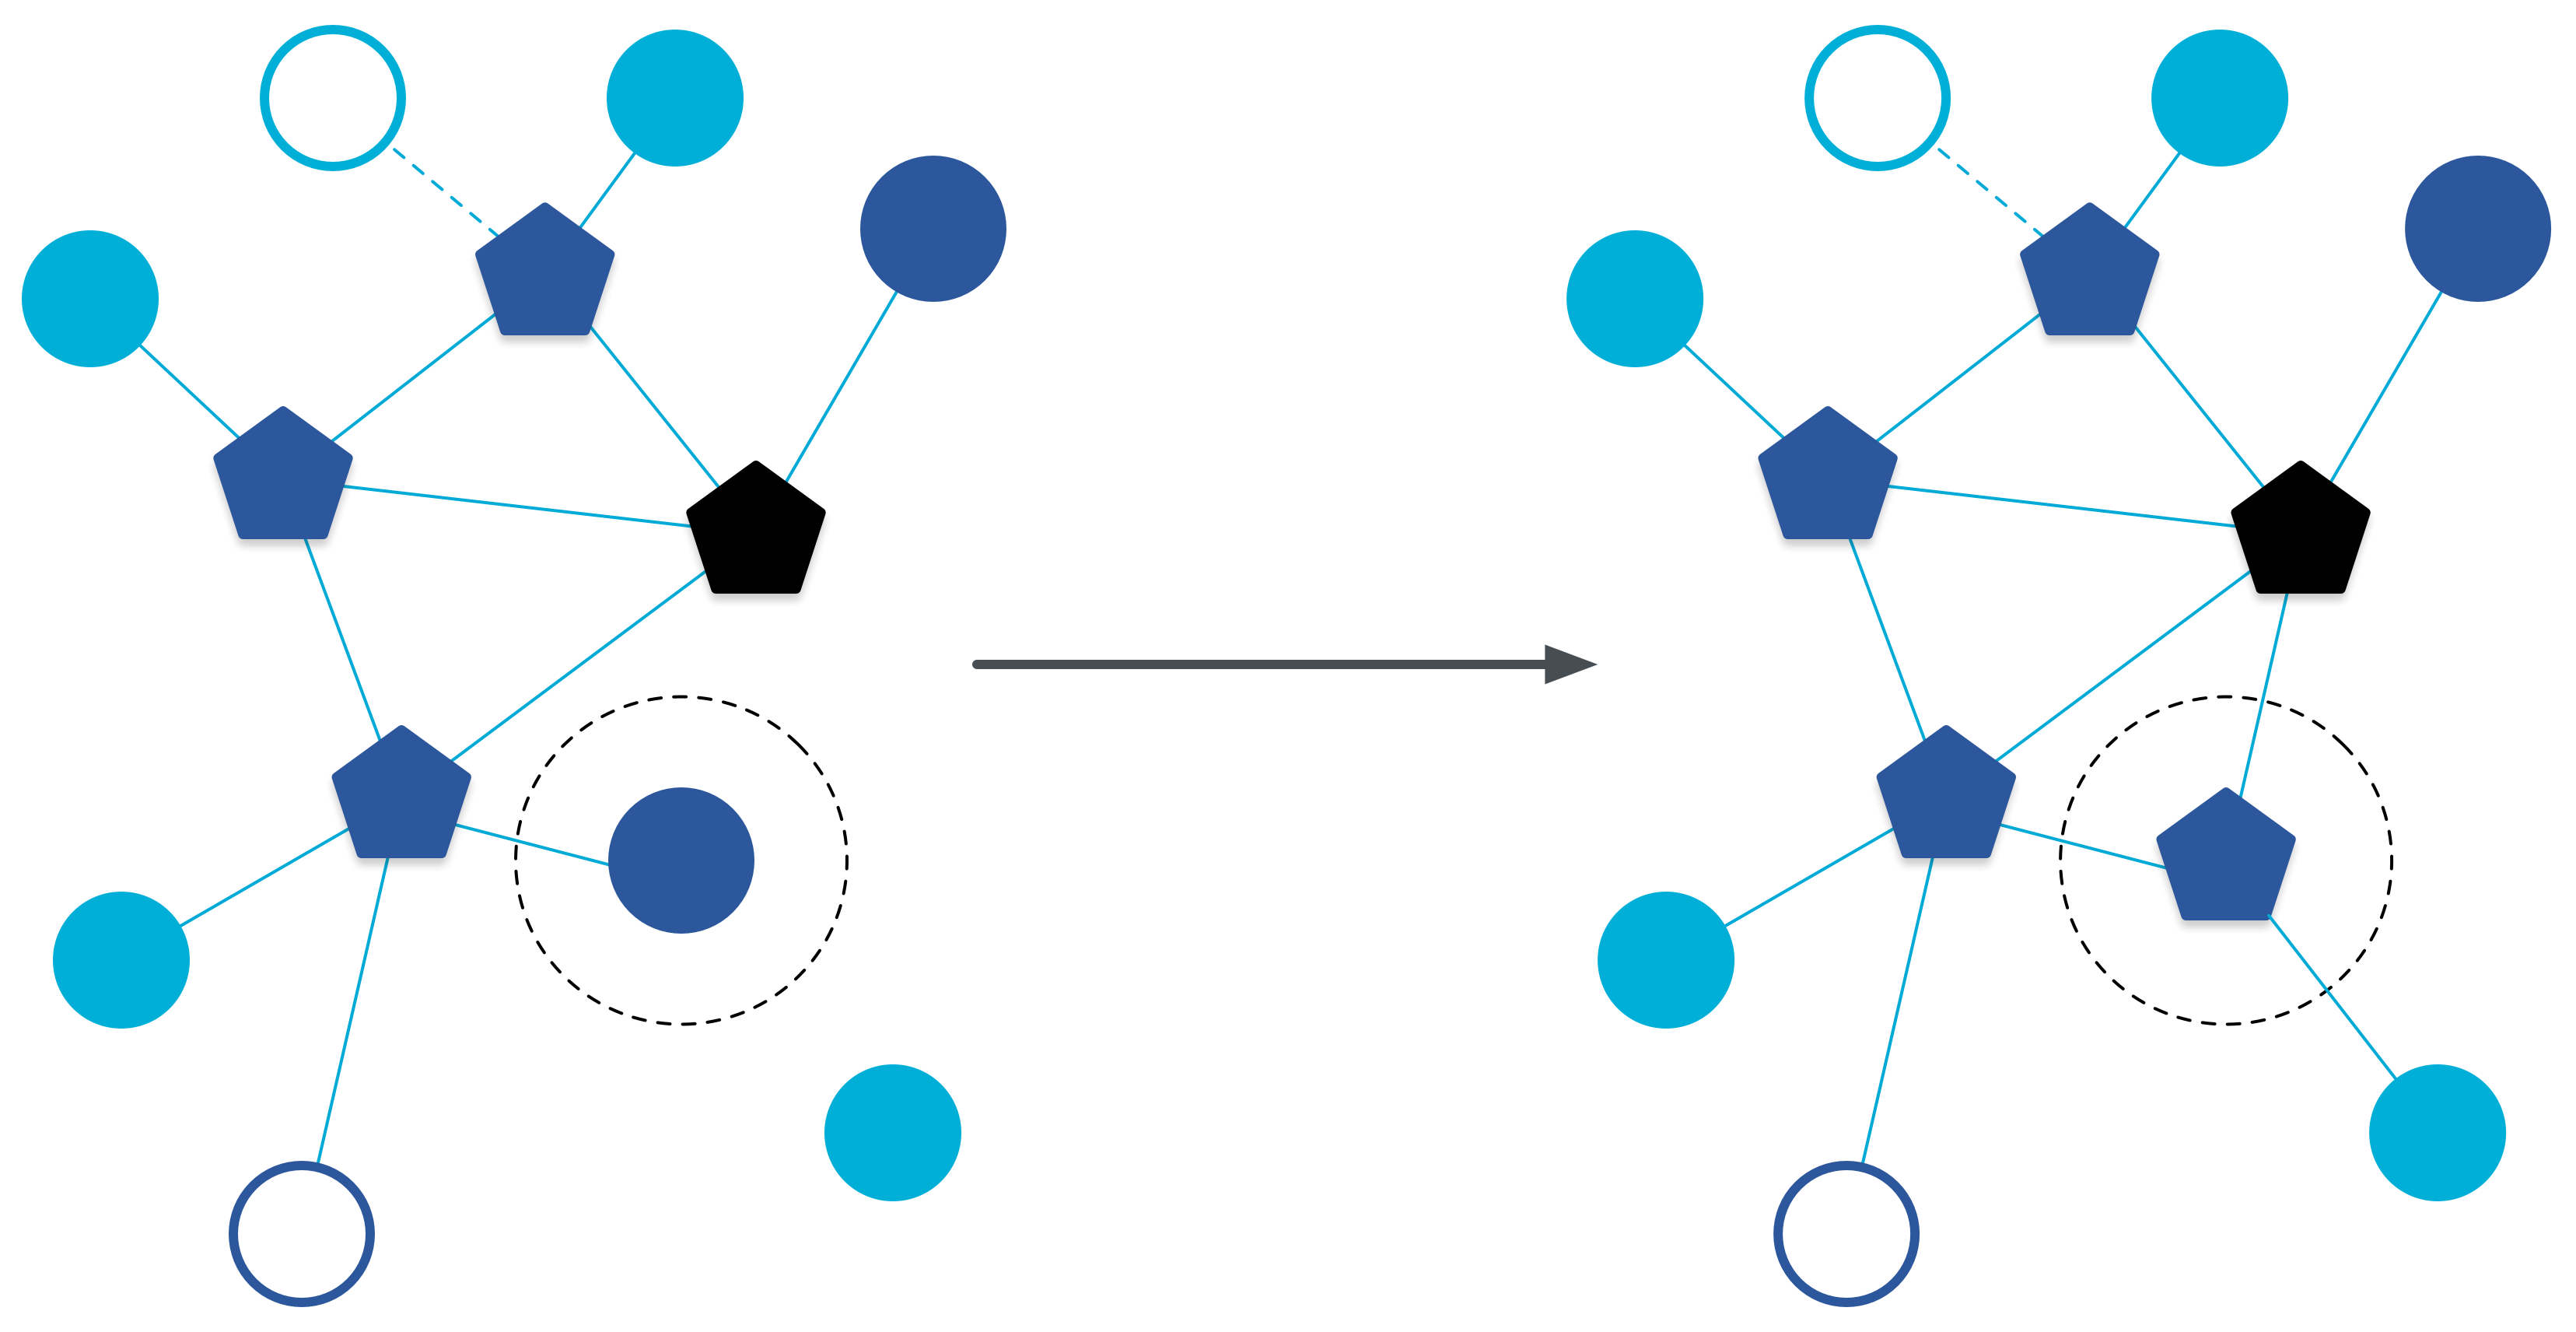 Node url. Thread Network. Network Connectivity by Region. Network Connectivity by Region Plot.